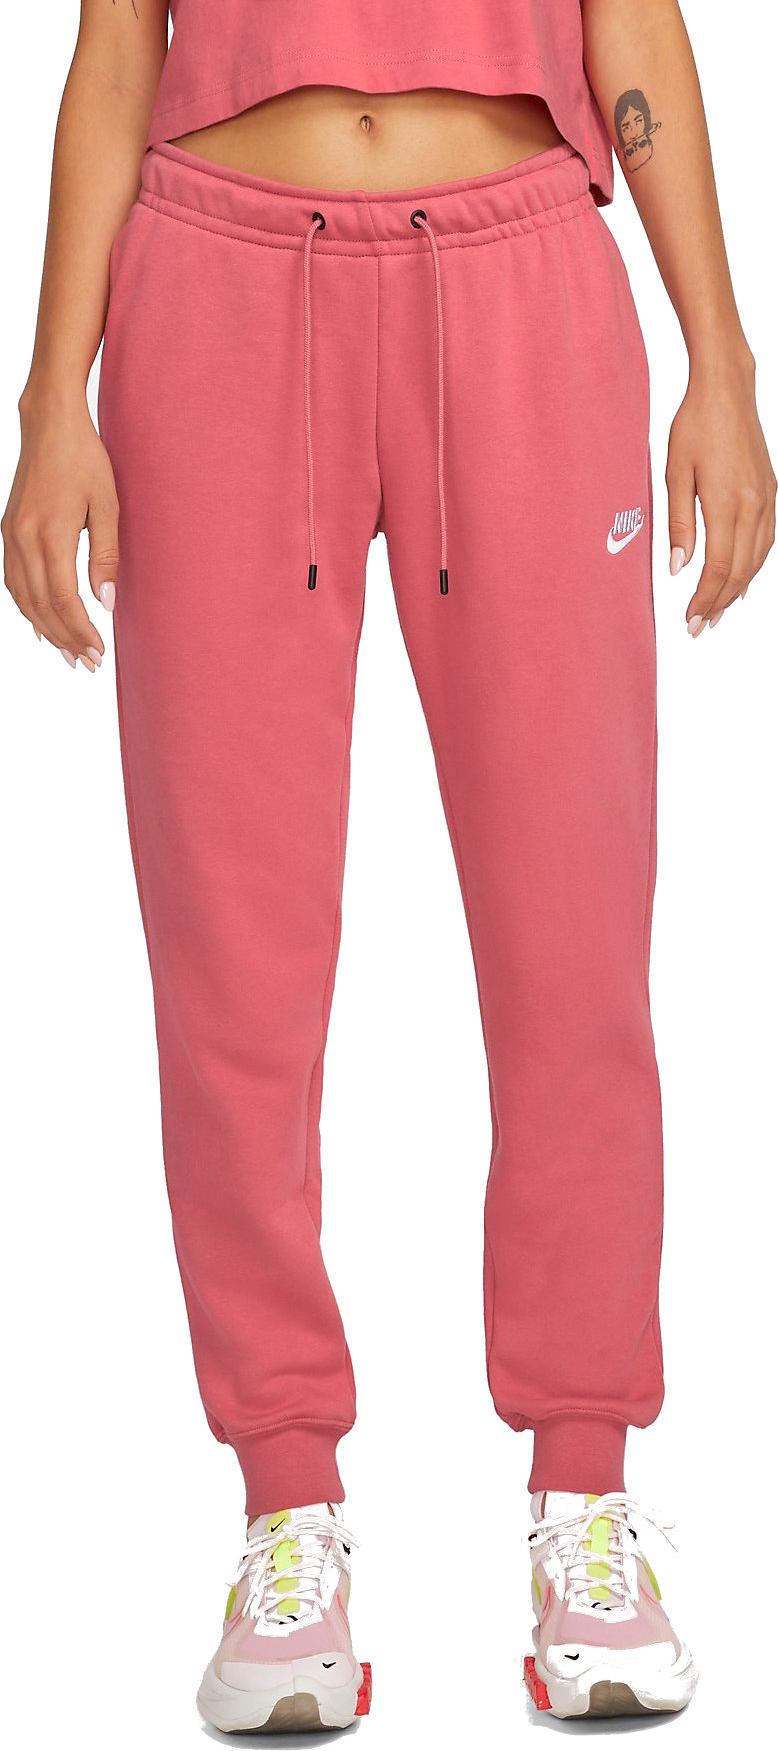 Pantalons Nike Sportswear Essential Women s Fleece Pants